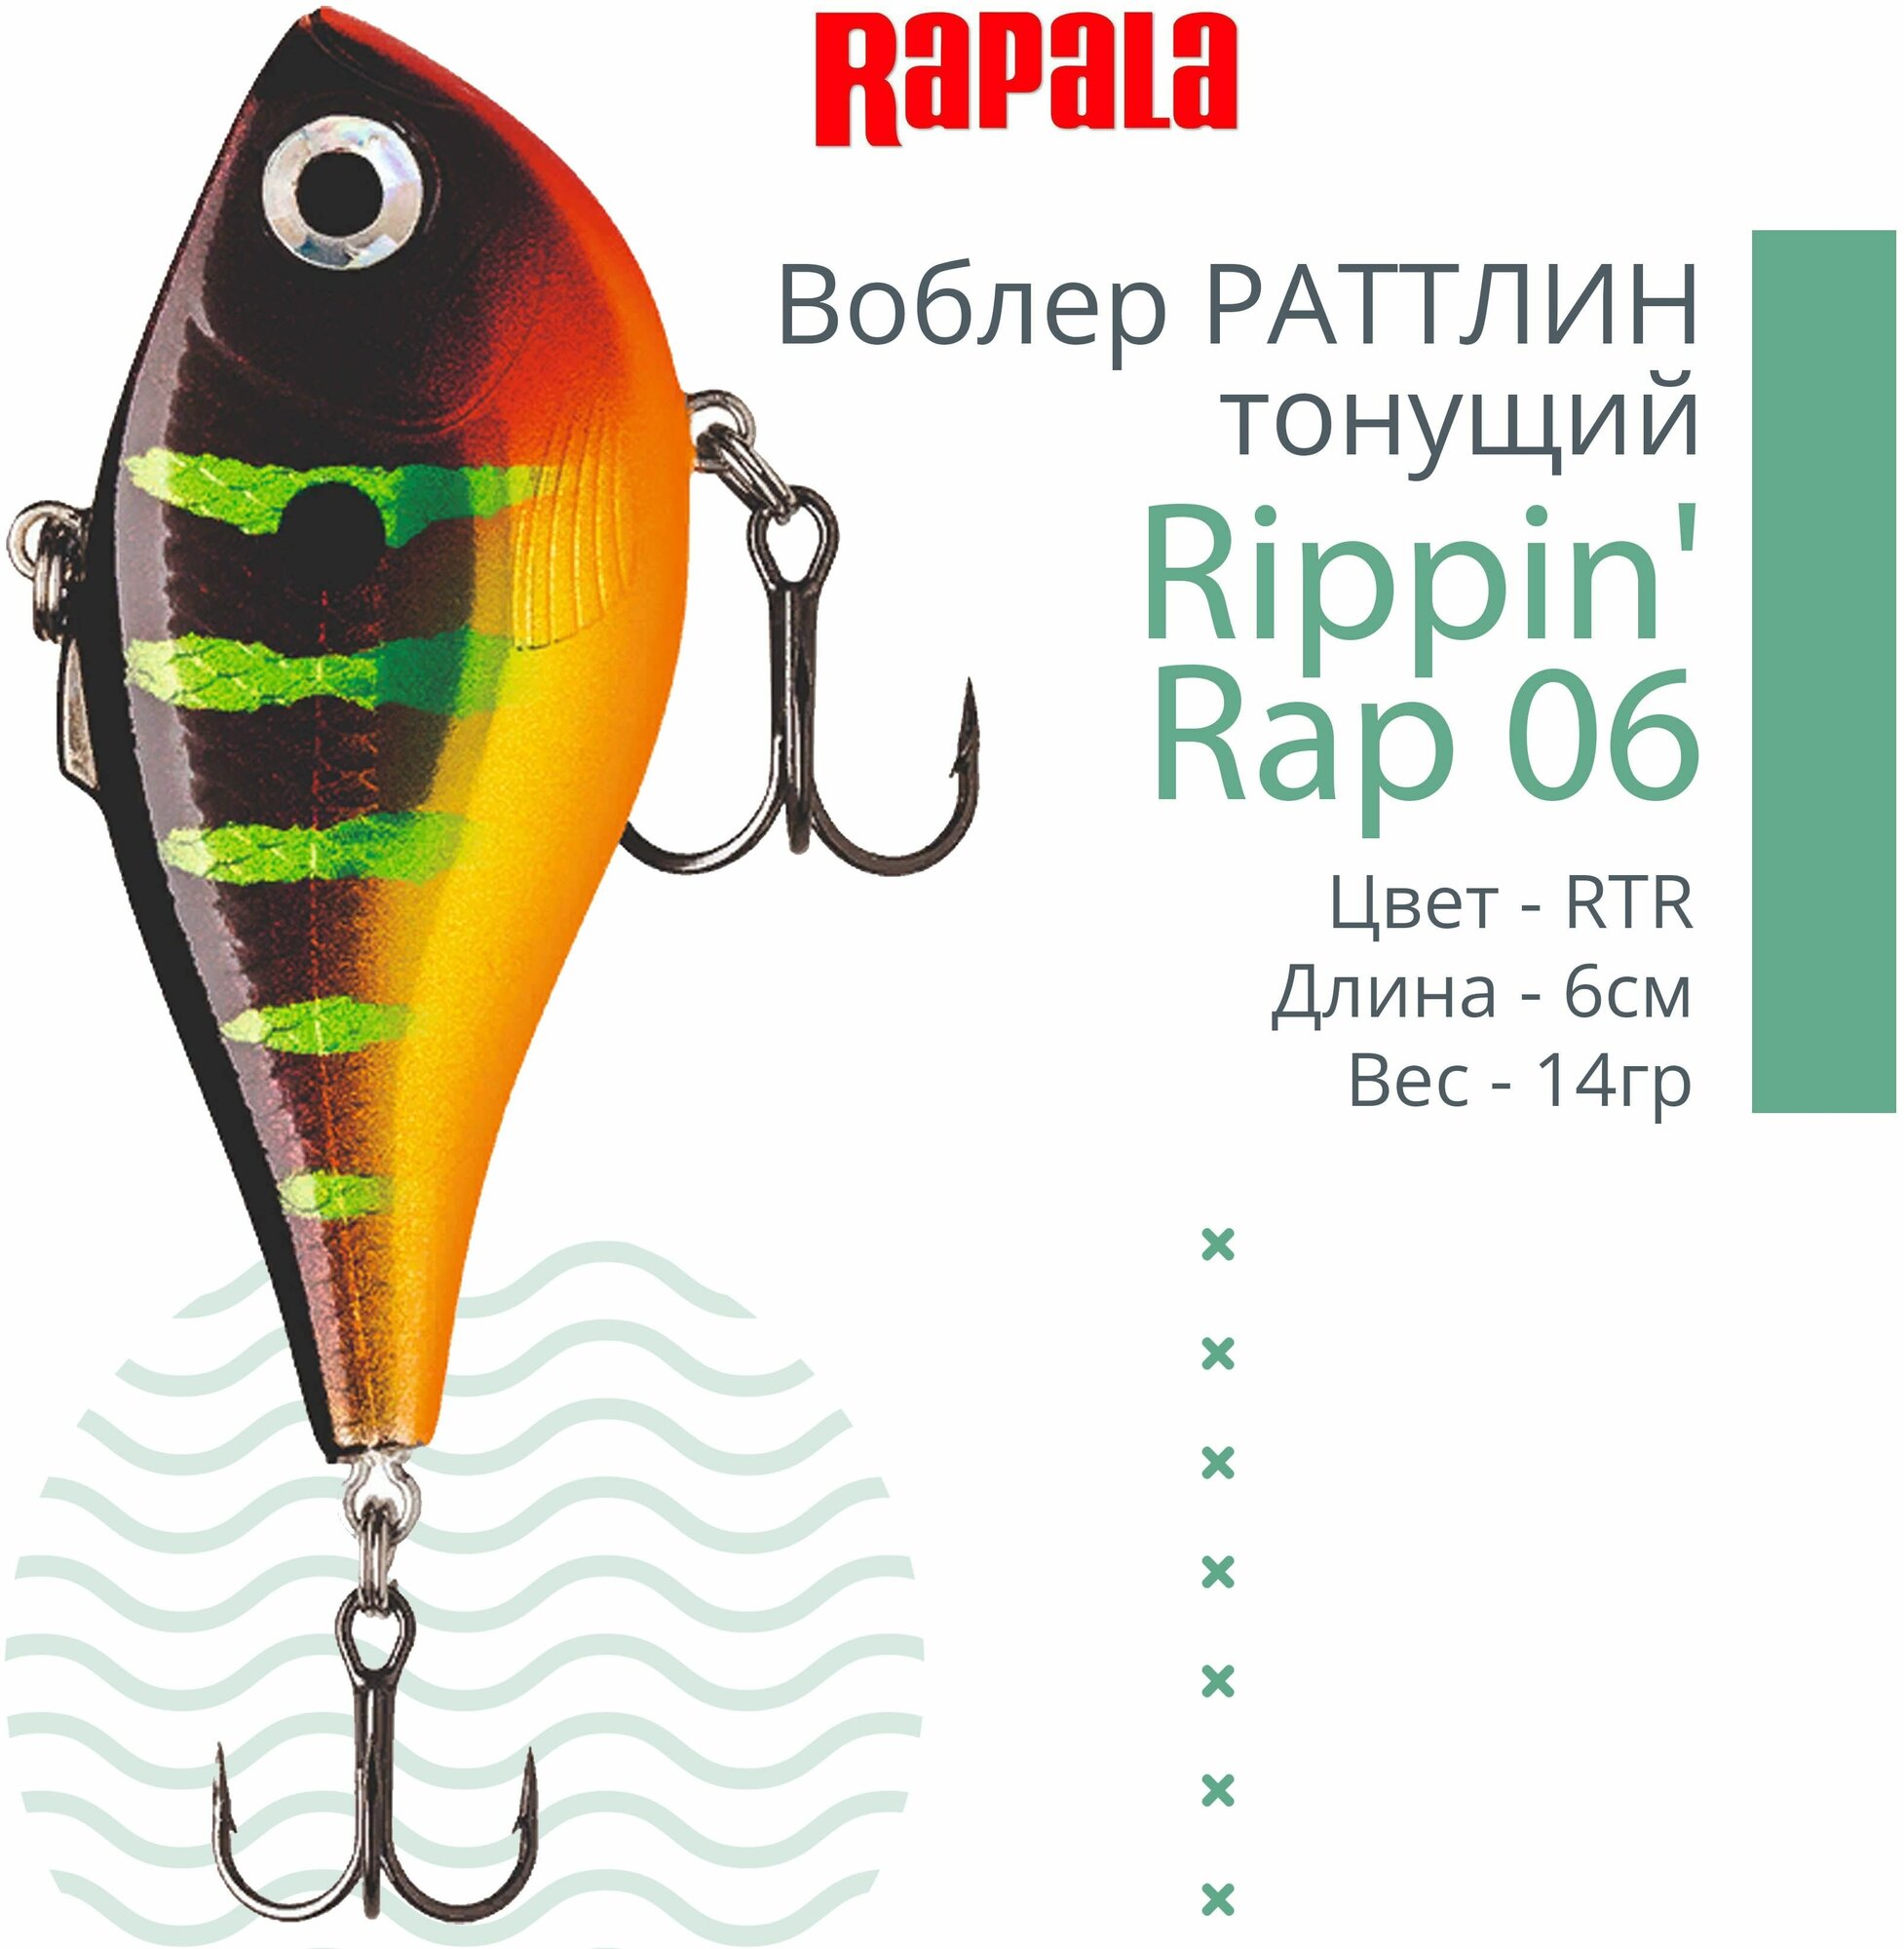 Воблер для рыбалки RAPALA Rippin' Rap 06, 6см, 14гр, цвет RTR, тонущий